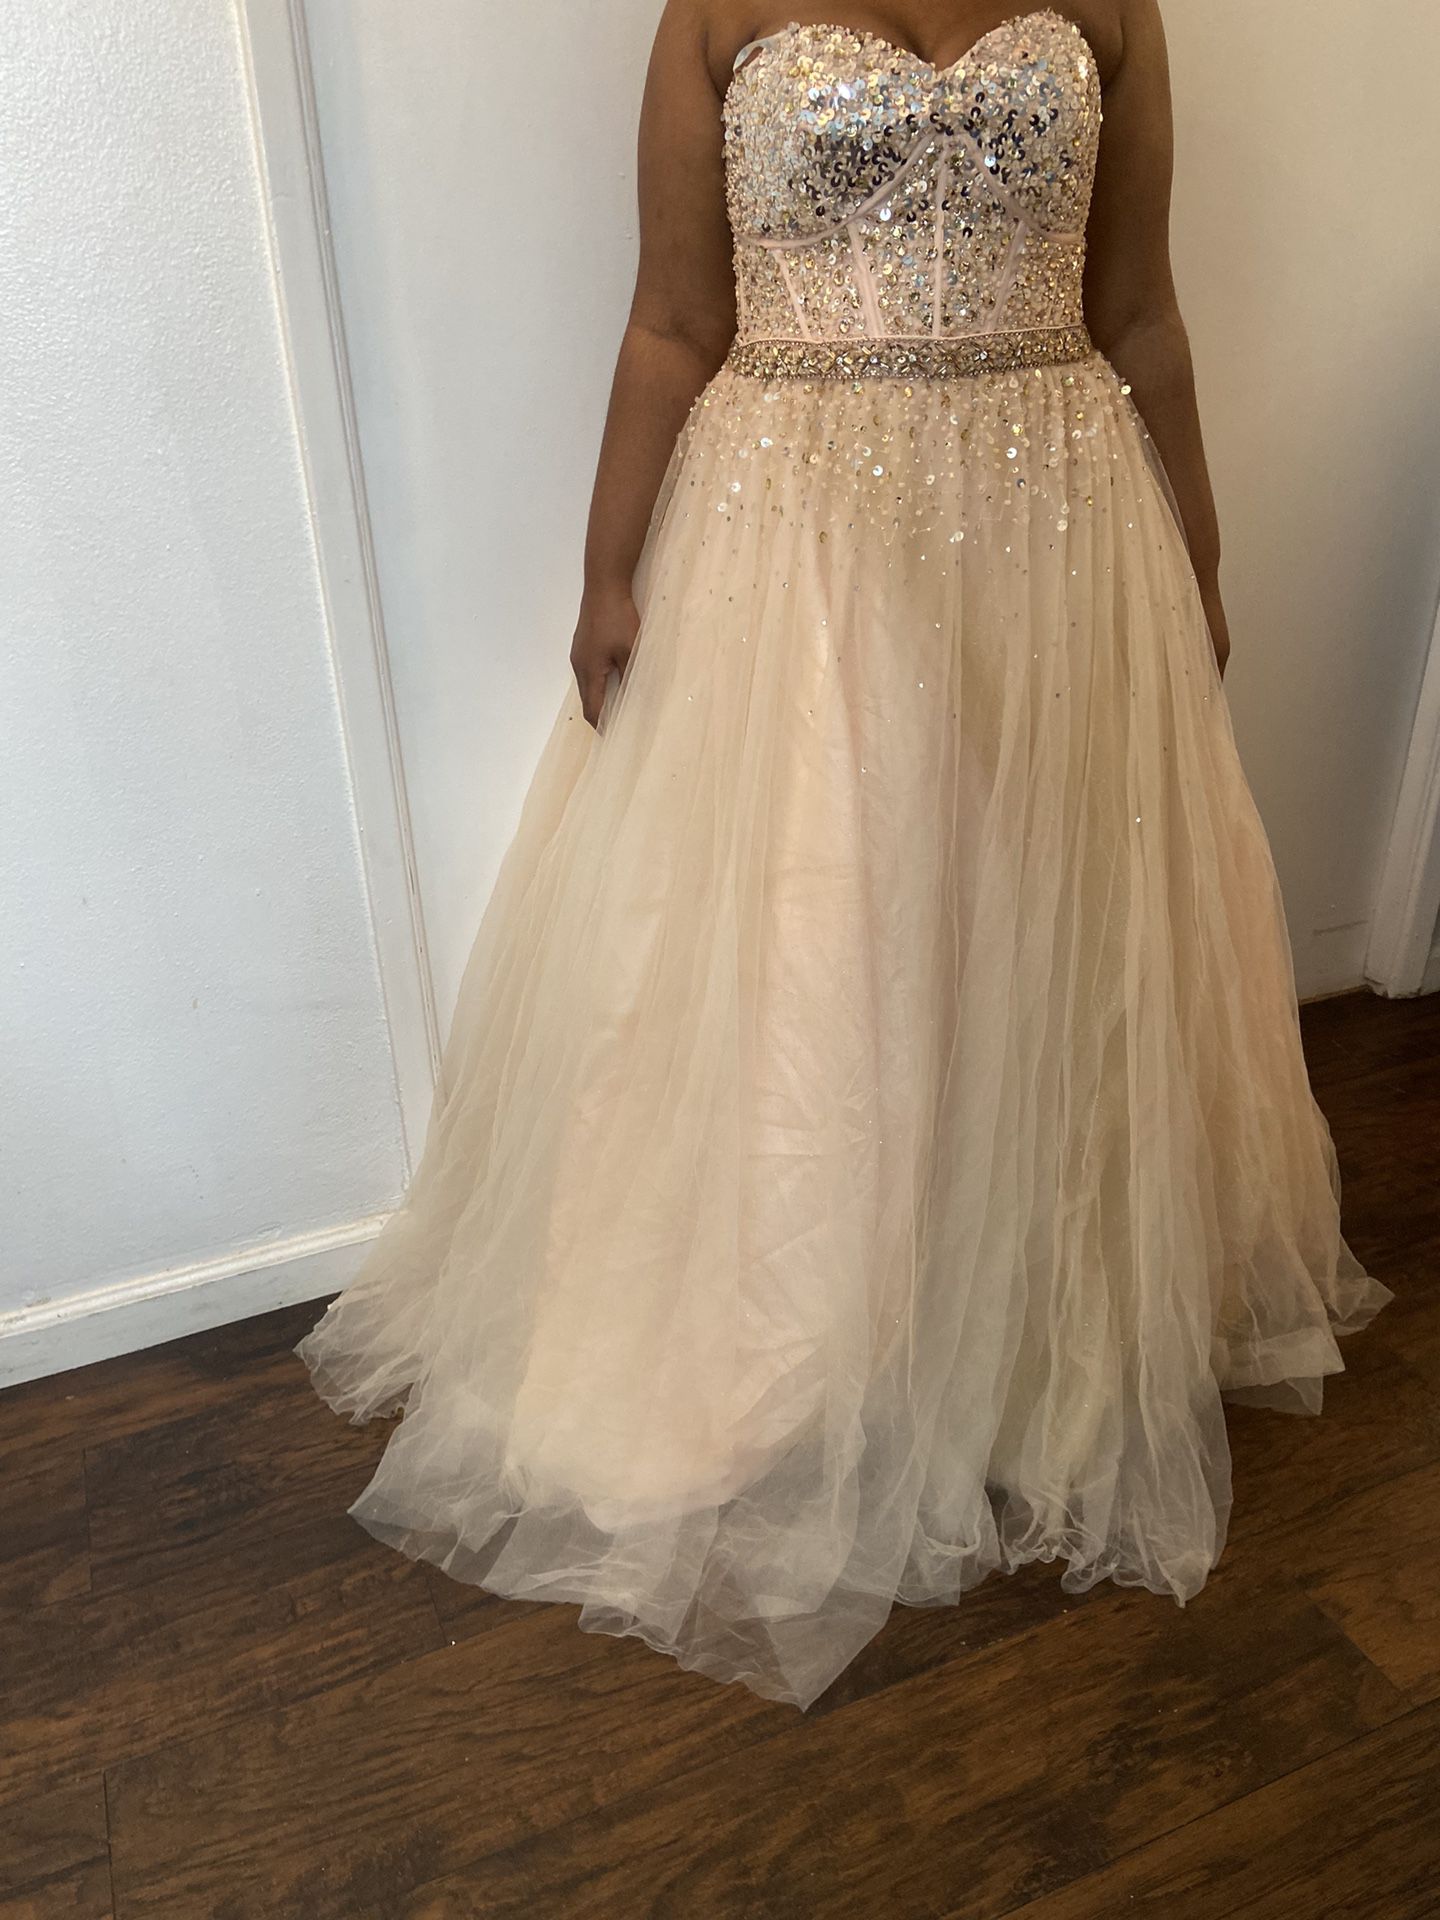 Ball Gown/ Prom Dress/ Quinceañera dress